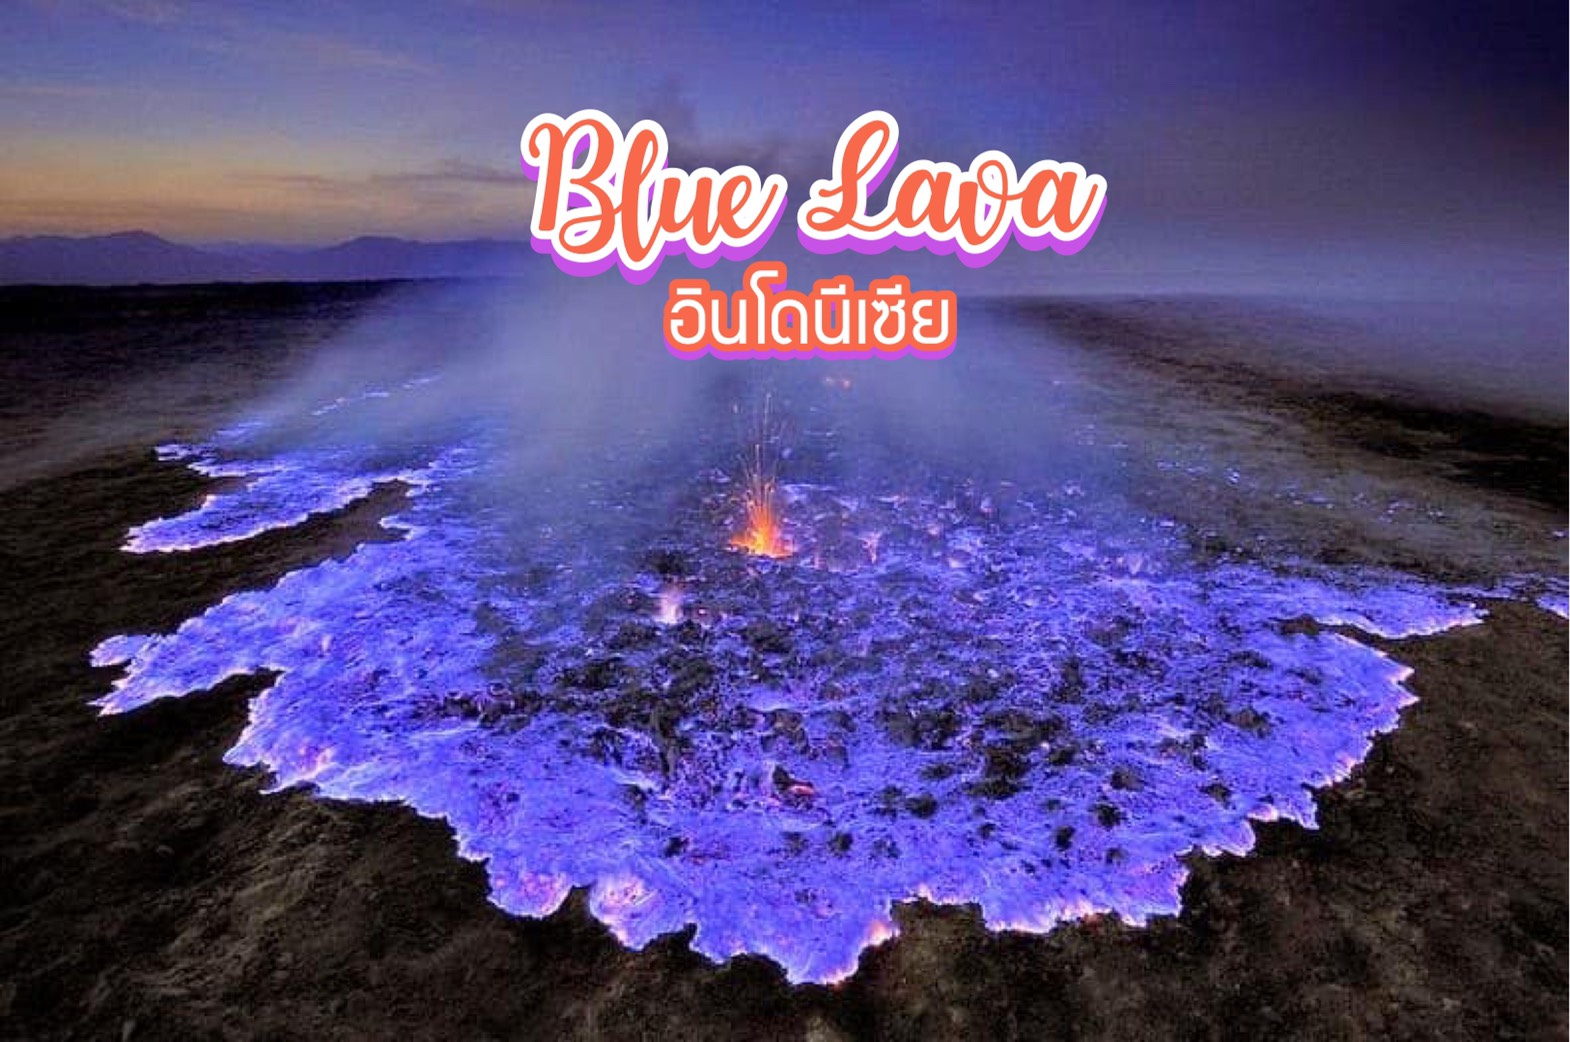 ลาวาสีคราม Blue lava อินโดนีเซีย